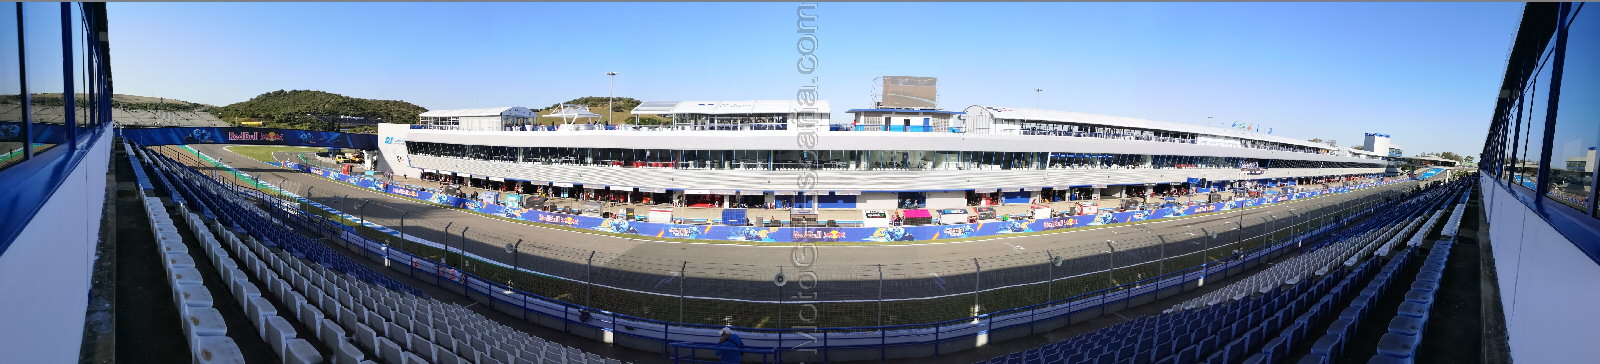 VIP Grandstand at Circuito de Jerez-Angel Nieto